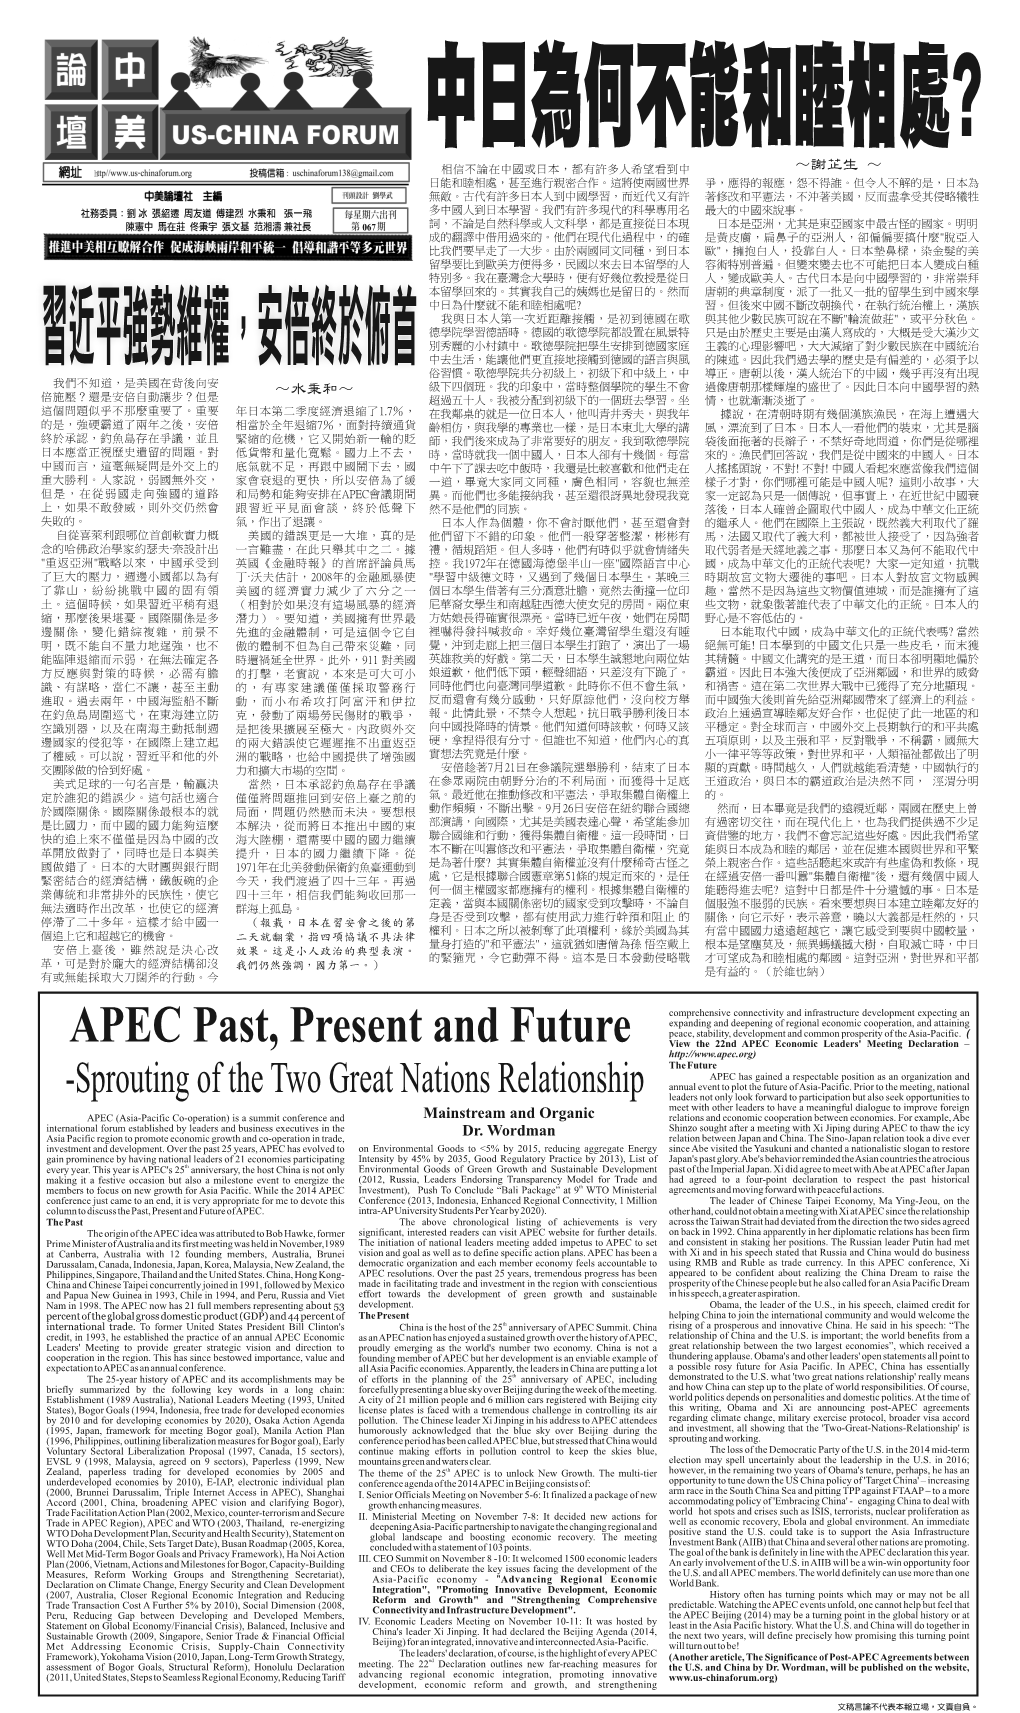 APEC Past, Present and Future